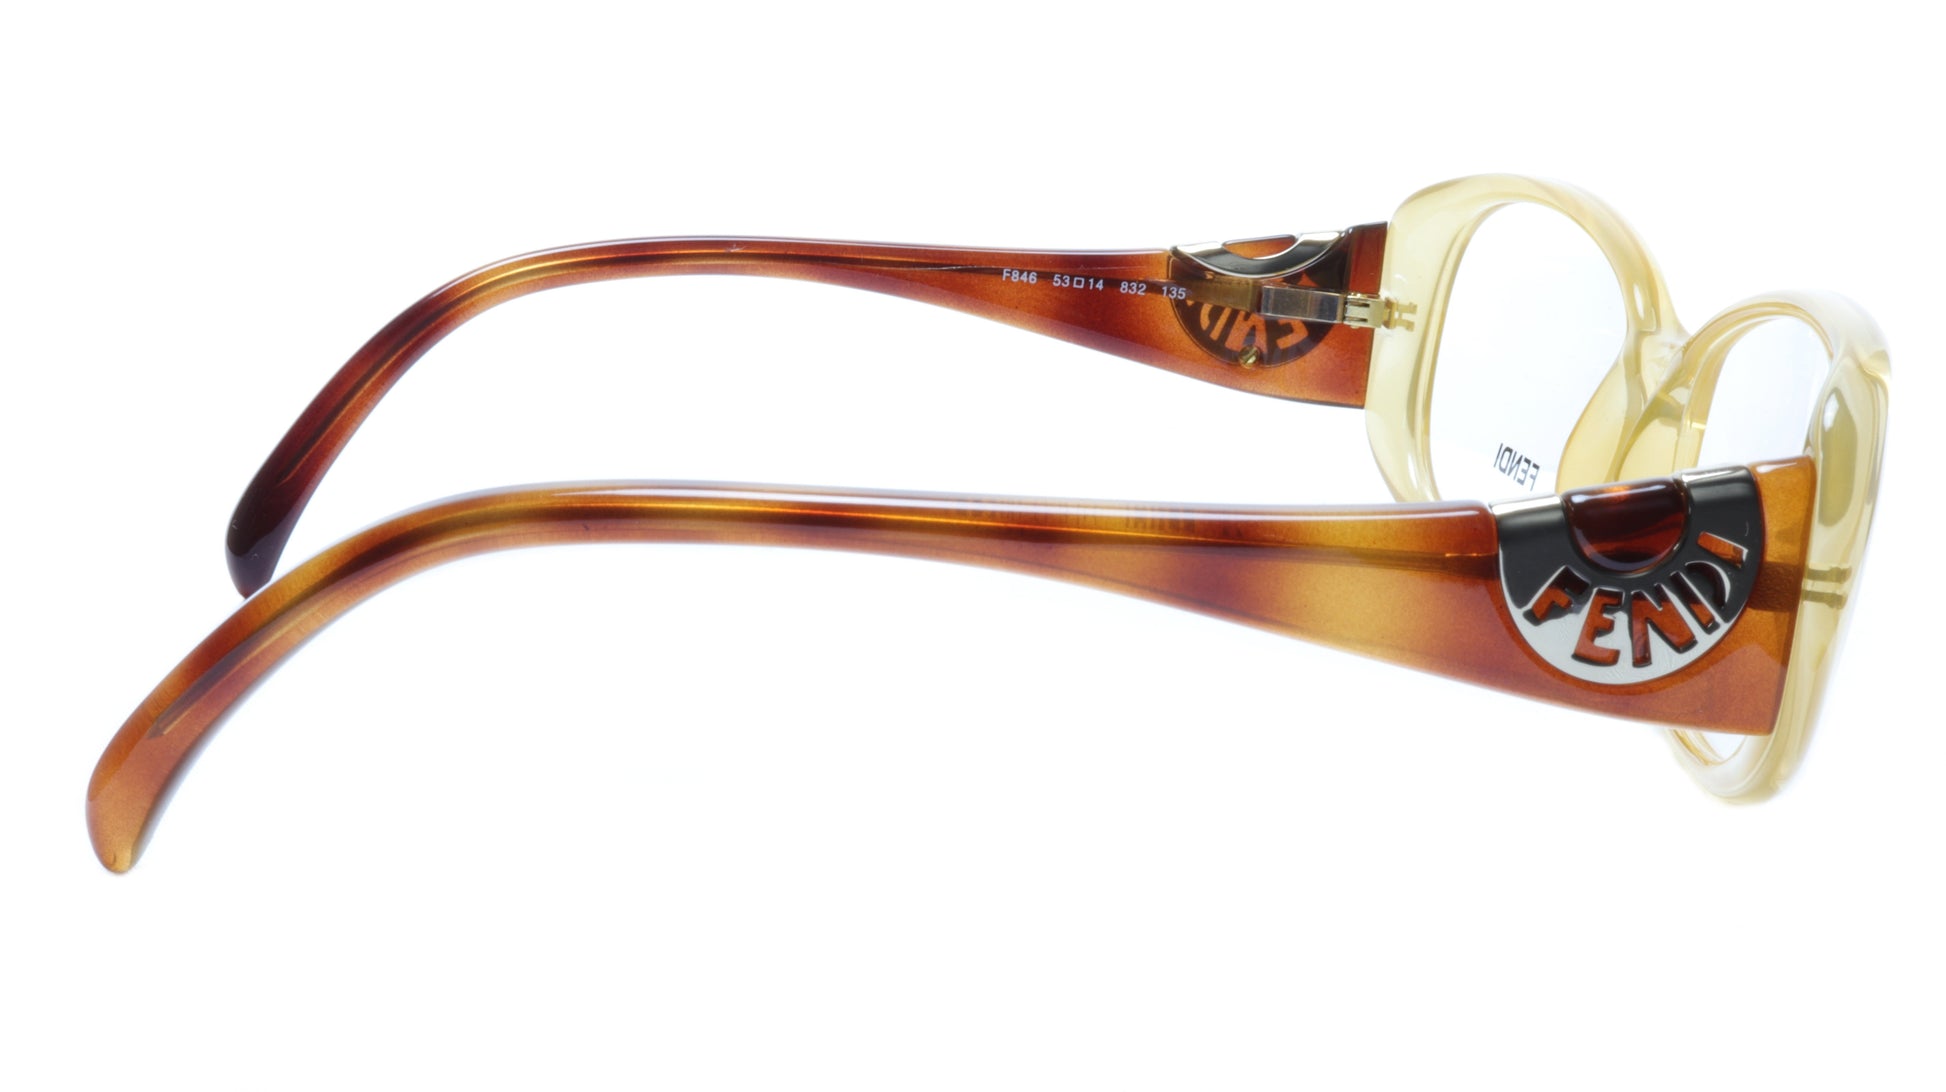 FENDI Eyeglasses Frame F846 (832) Acetate Tangerine Italy Made 53-14-135, 36 - Frame Bay